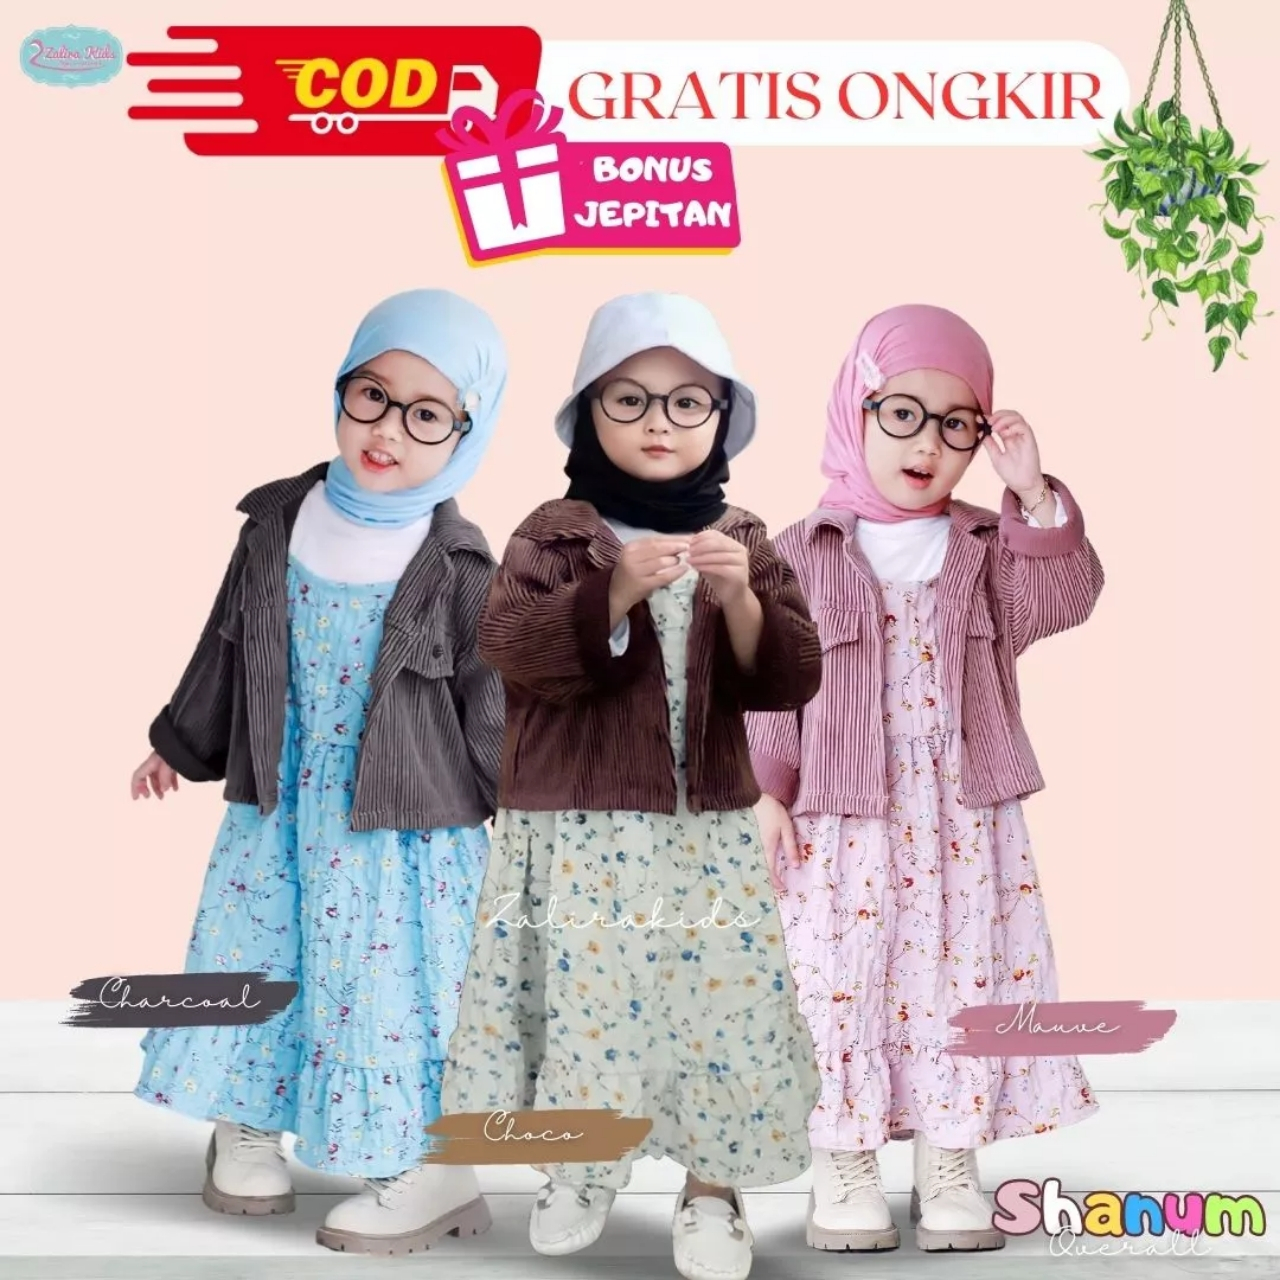 Shanum Series ORIGINAL ZALIRA KIDS Baju Gamis Anak perempuan terbaru usia 1 - 4 TAHUN | Dress anak perempuan set jilbab | Setalan Anak perempuan